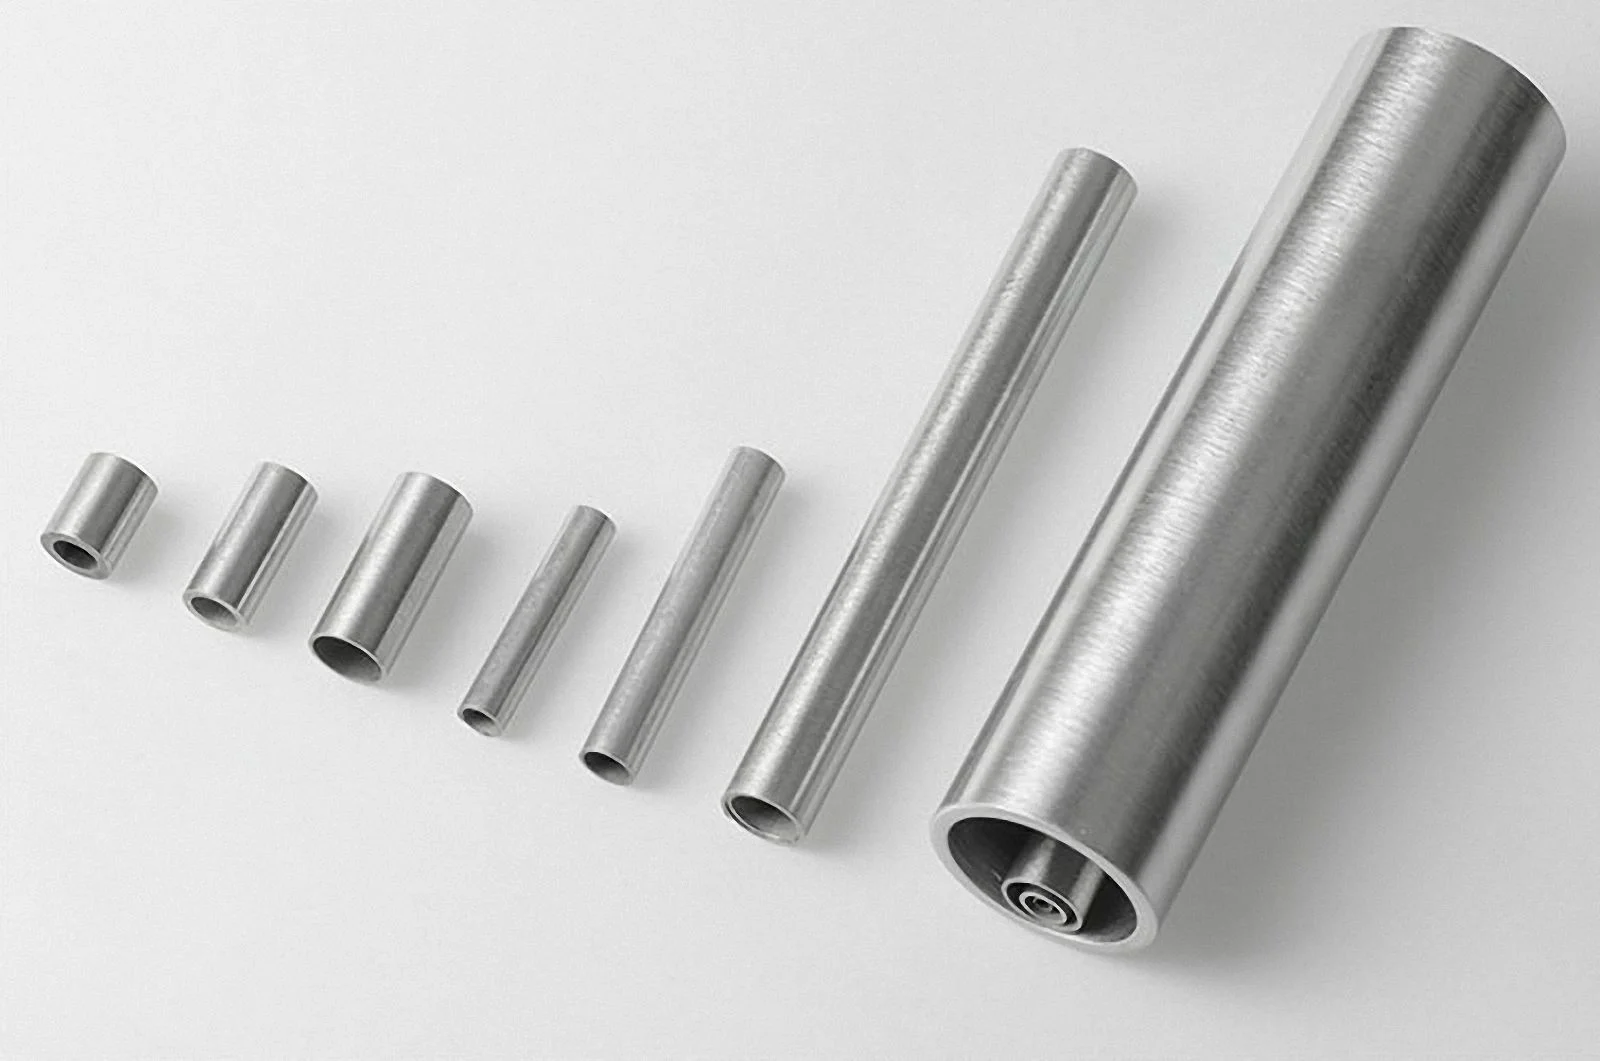 Ống sus 304 là loại ống inox chất lượng cao được sử dụng rộng rãi trong ngành công nghiệp